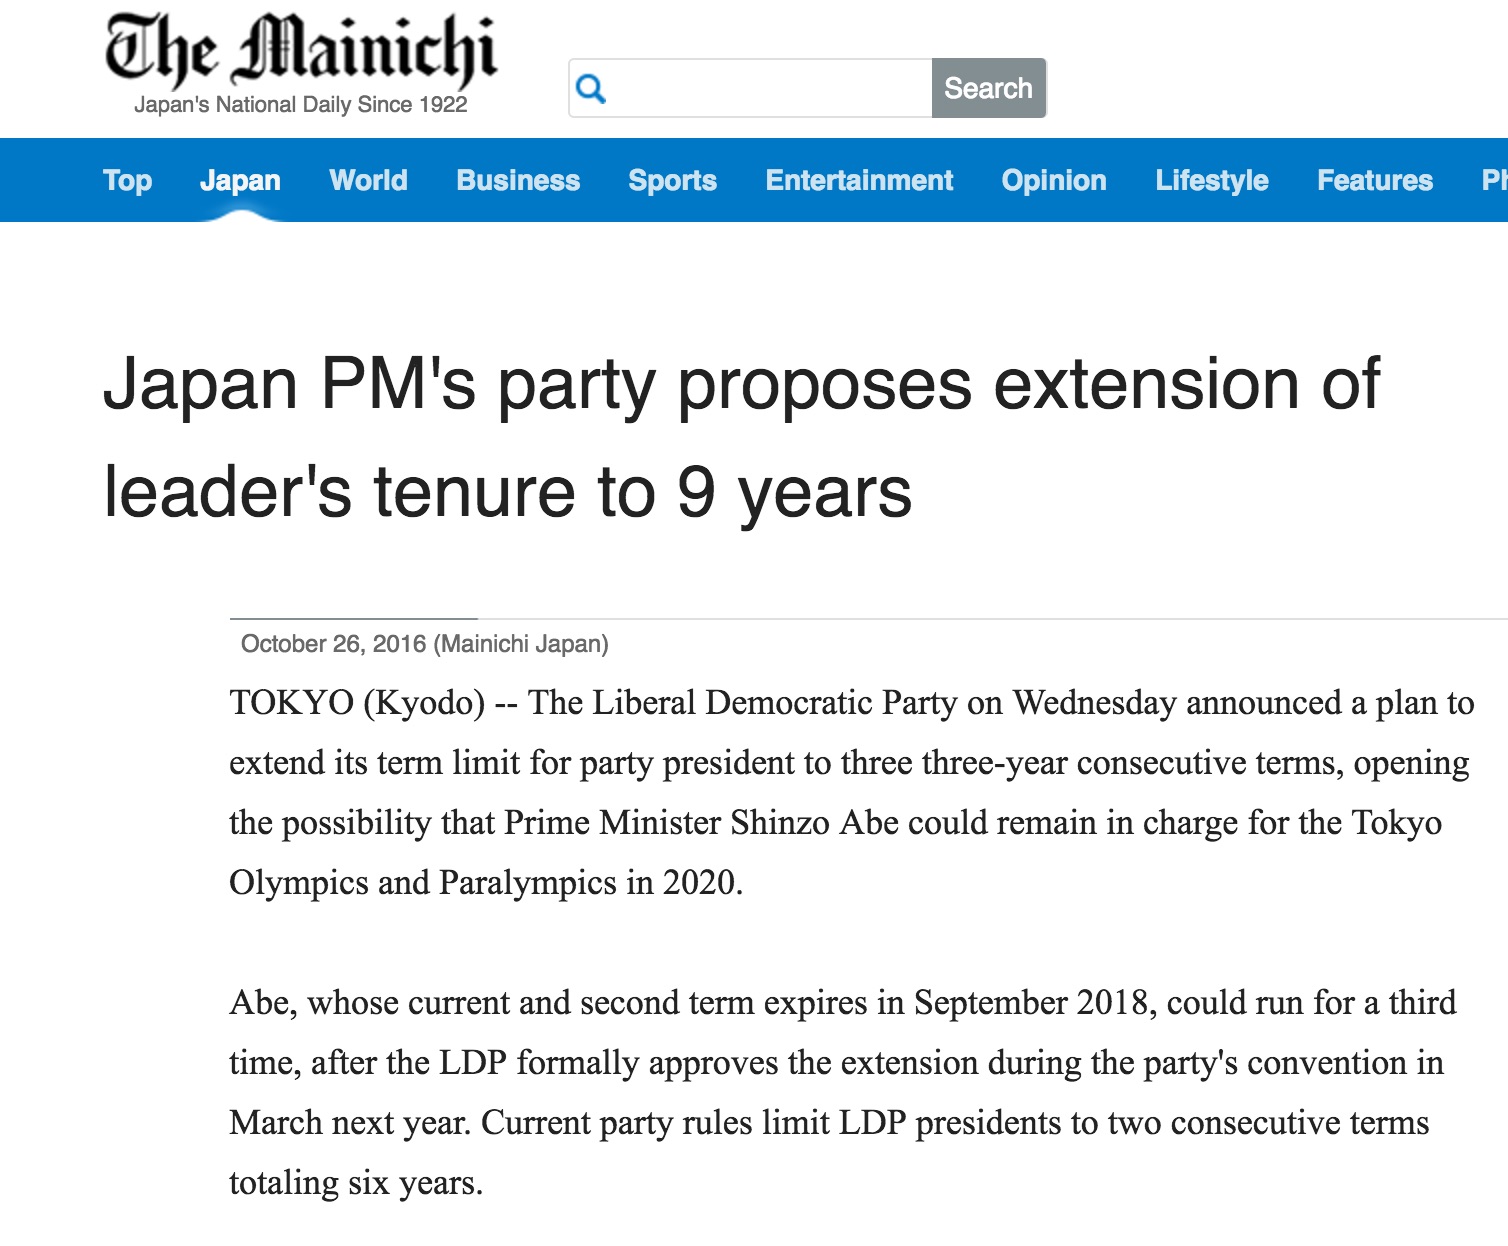 Le parti libéral-démocrate dirigé par le Premier ministre Shinzo Abe vient d'officialiser son plan d'étendre le mandat de son président à trois mandats consécutifs de trois ans chacun, au lieu de deux actuellement. Copie d'écran du Mainichi, le 26 octobre 2016.